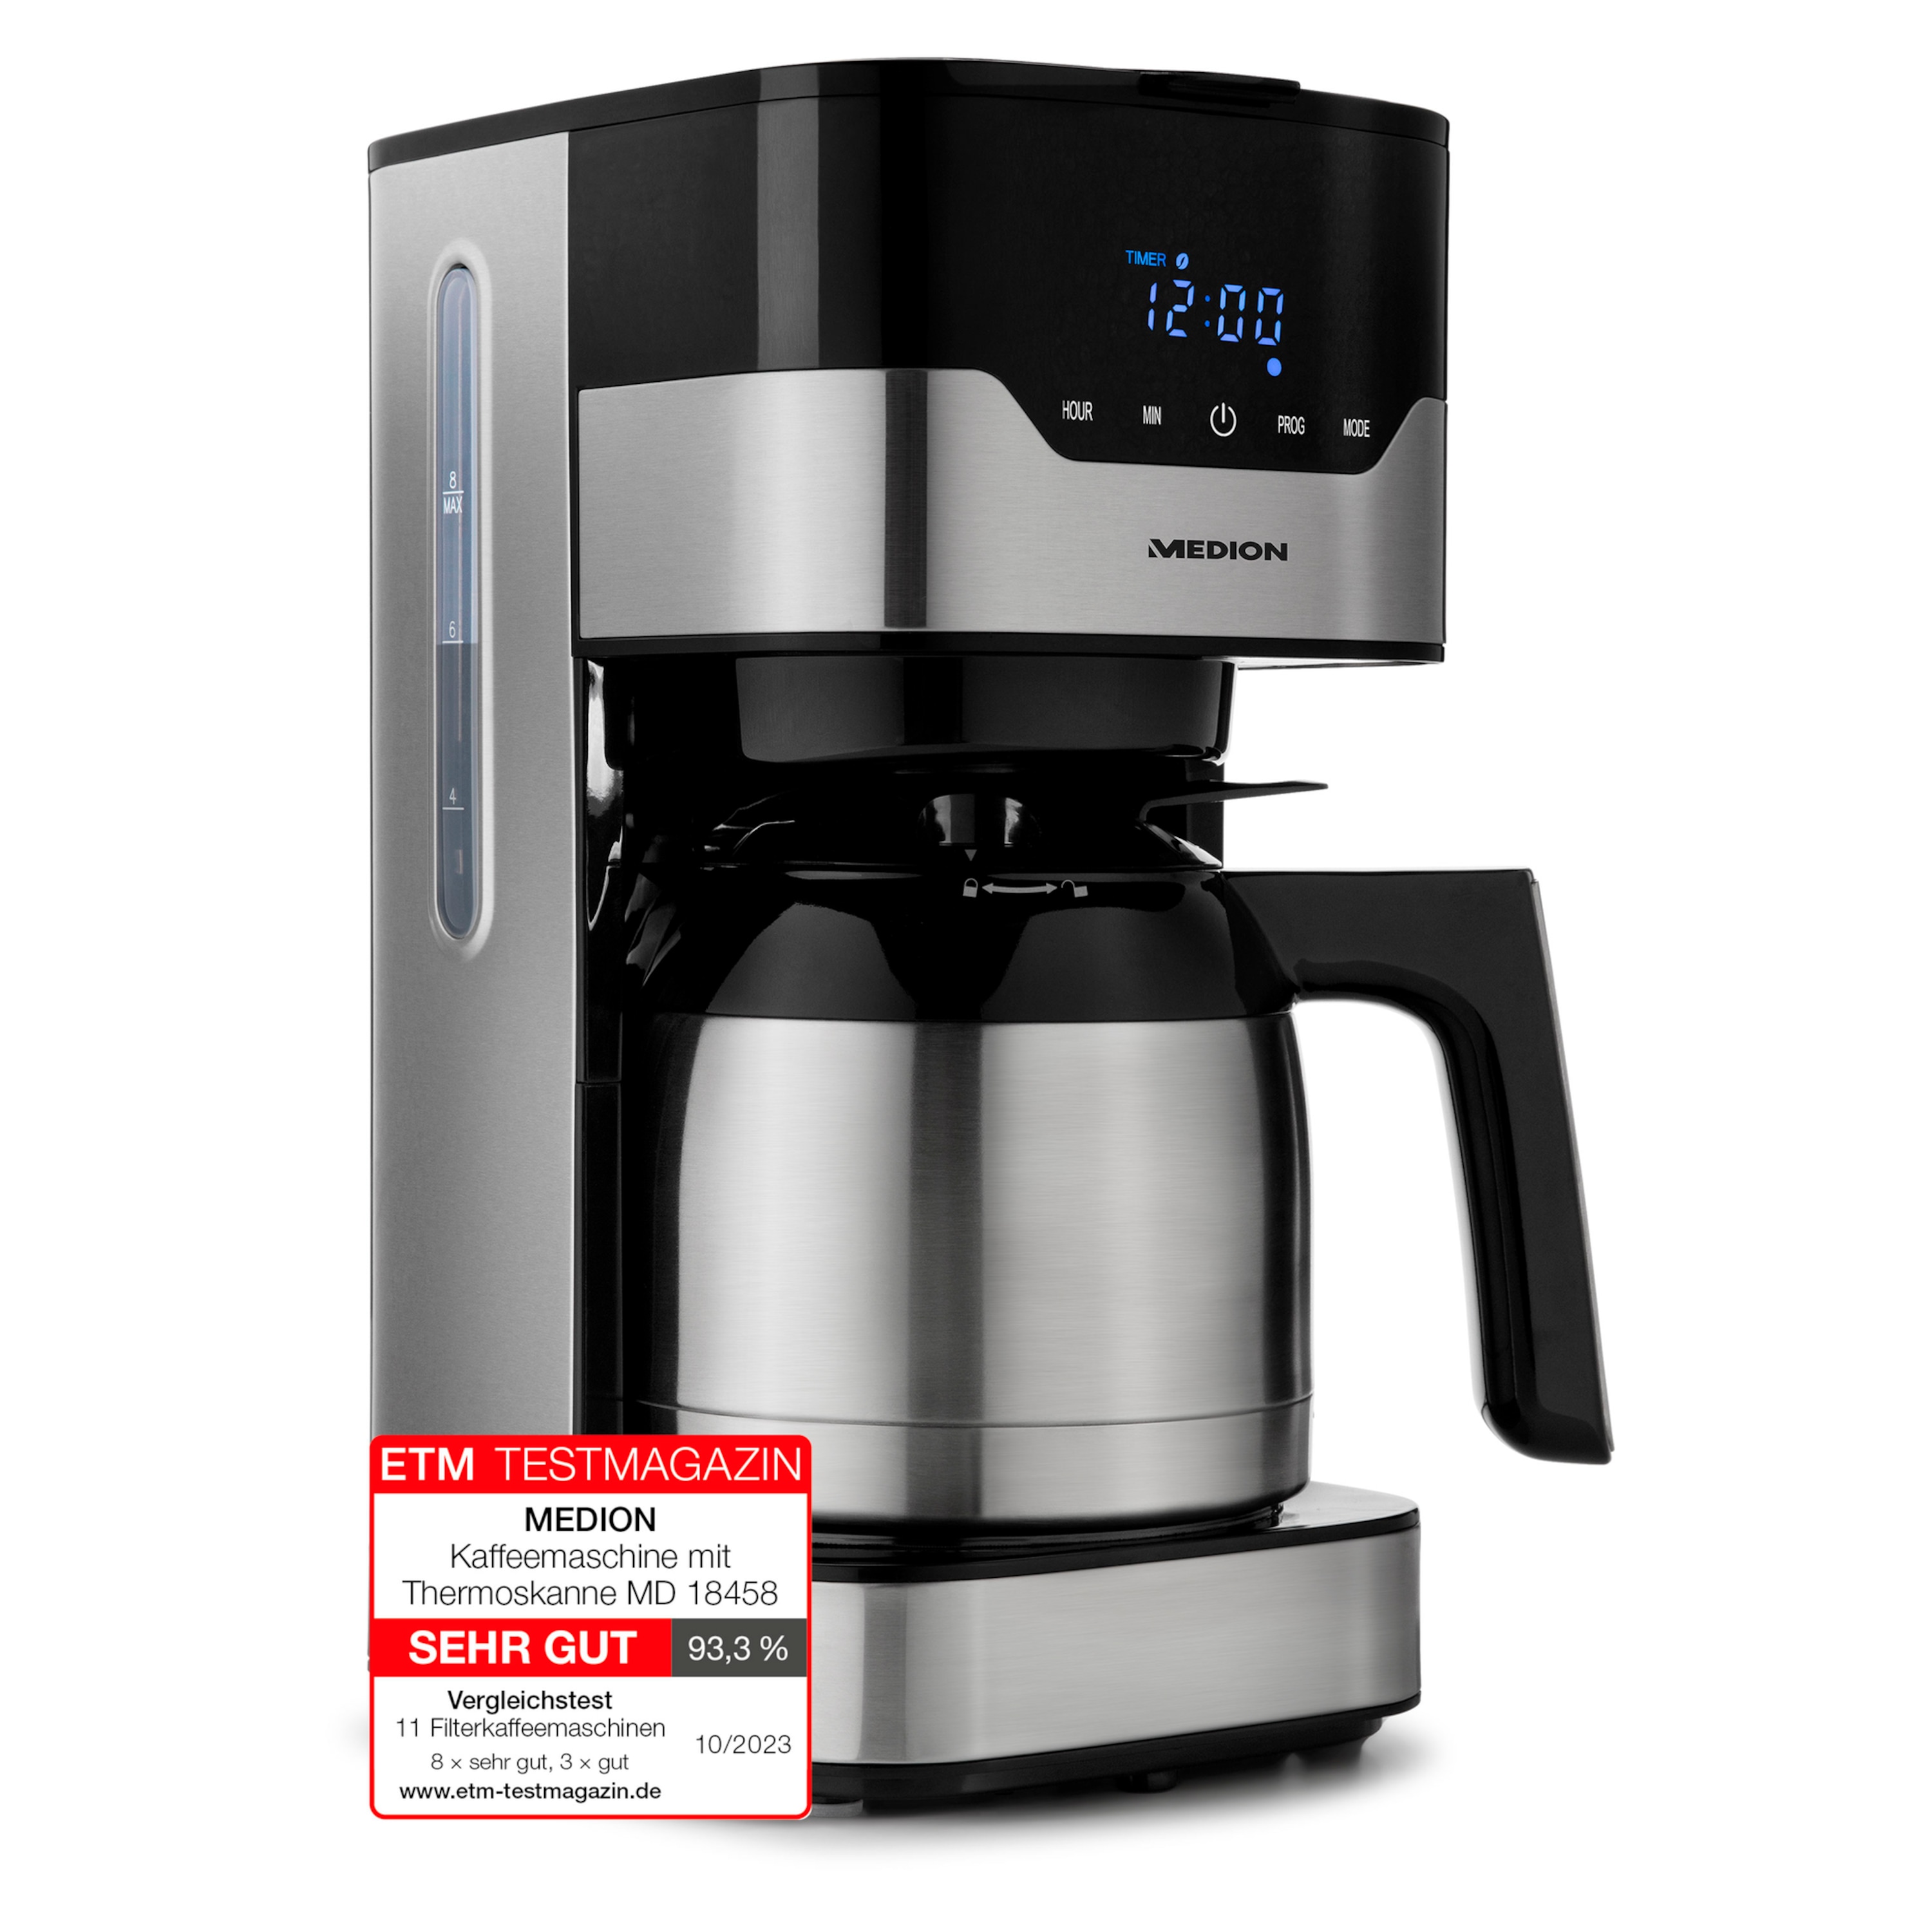 MEDION Kaffeemaschine mit Thermoskanne MD 18458, Timer-Funktion, Tropf-Stopp, 900 Watt, 1,1 Liter Fassungsvermögen, Aromawahlschalter